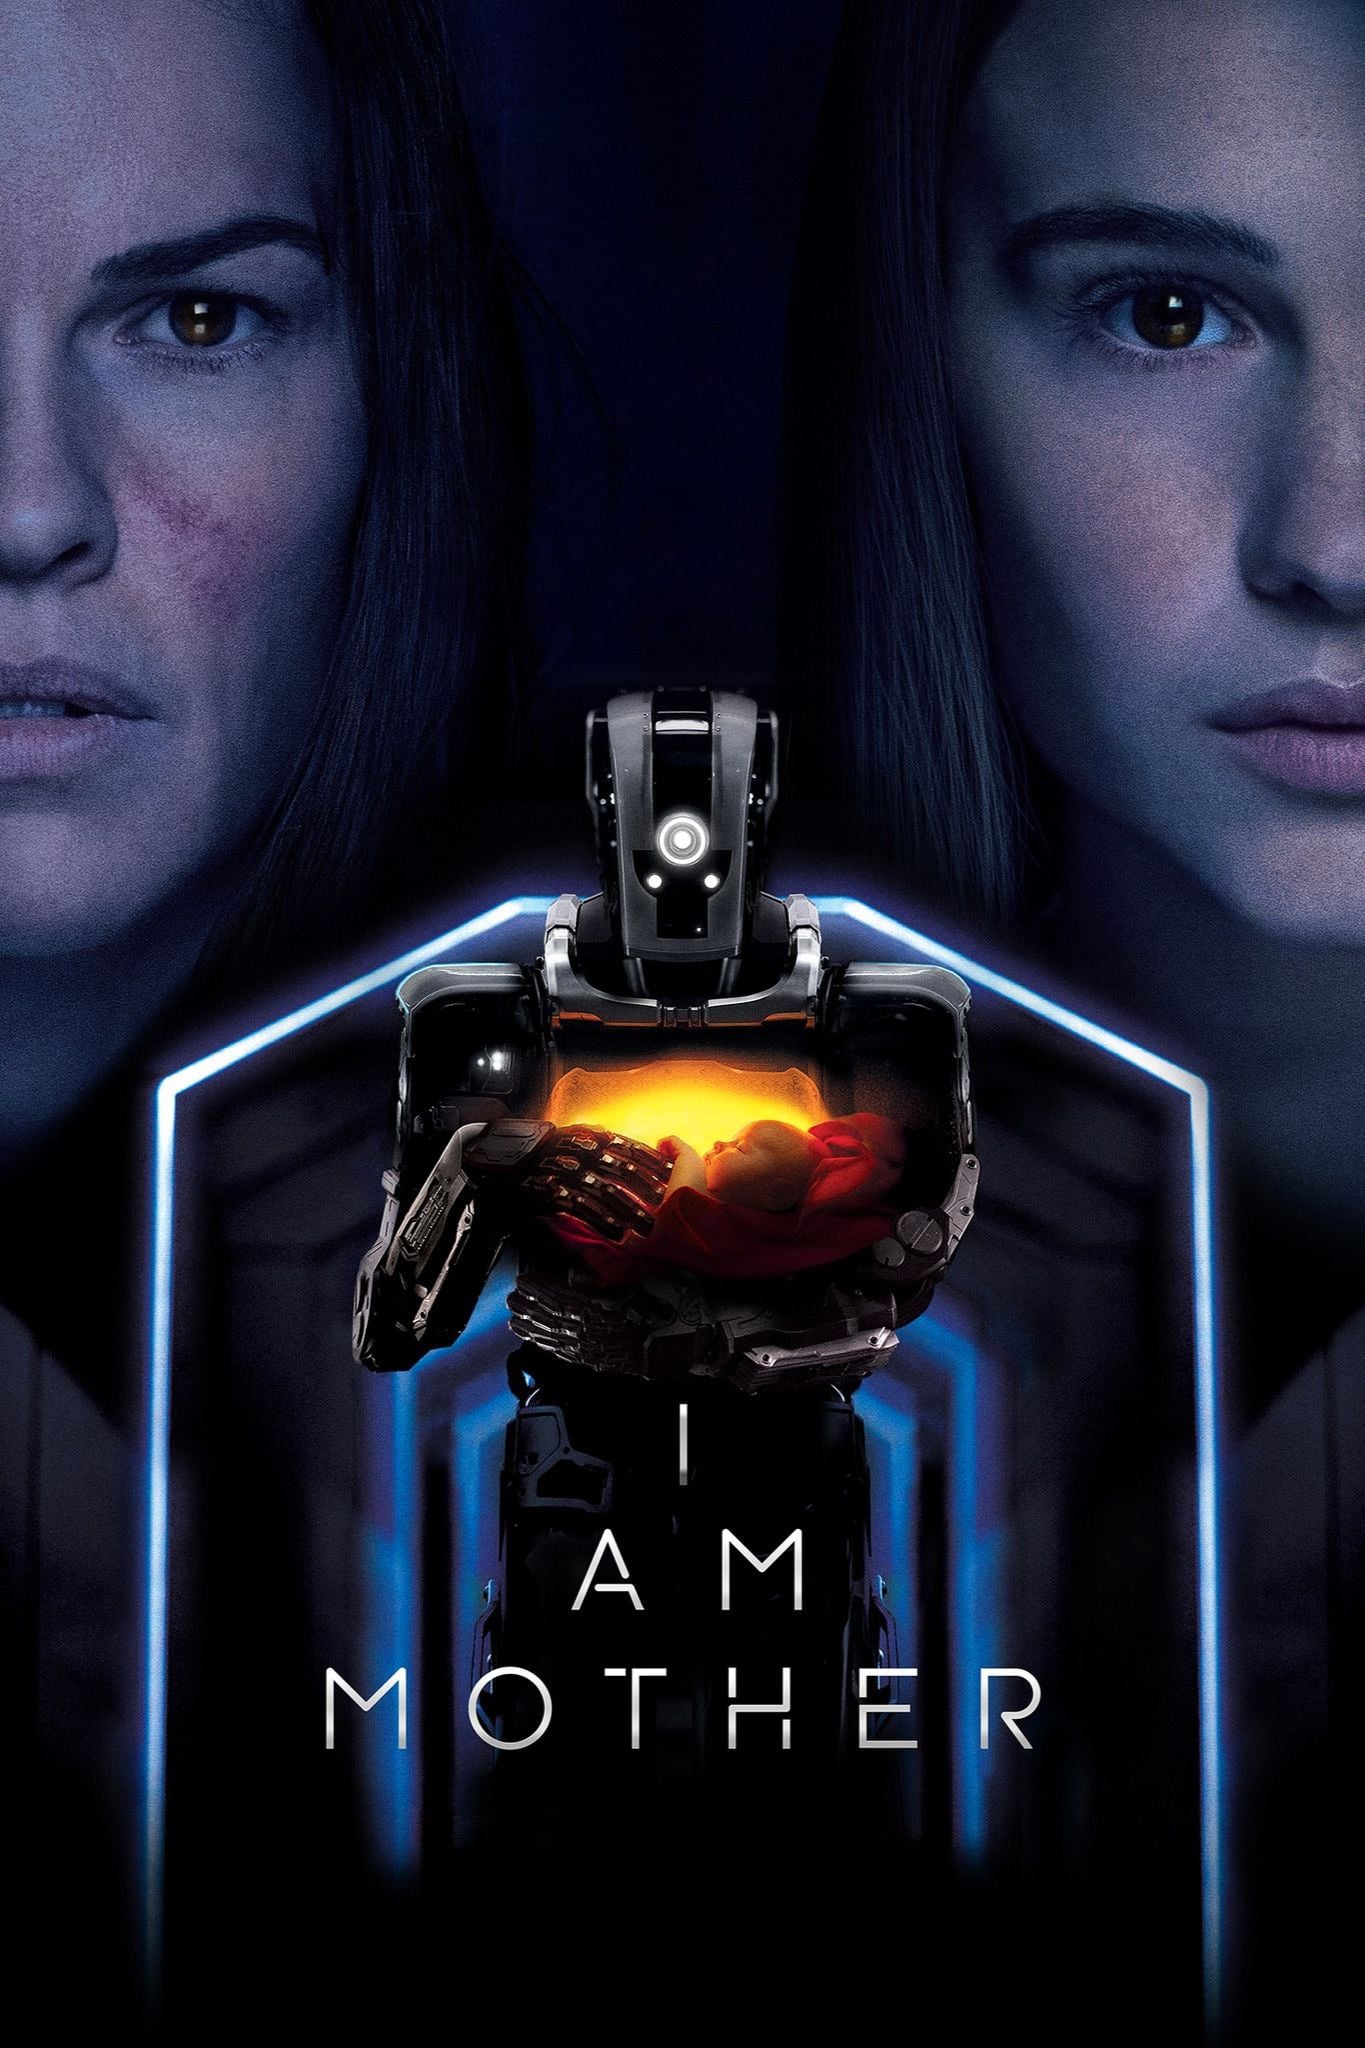 Affiche du film "I Am Mother"